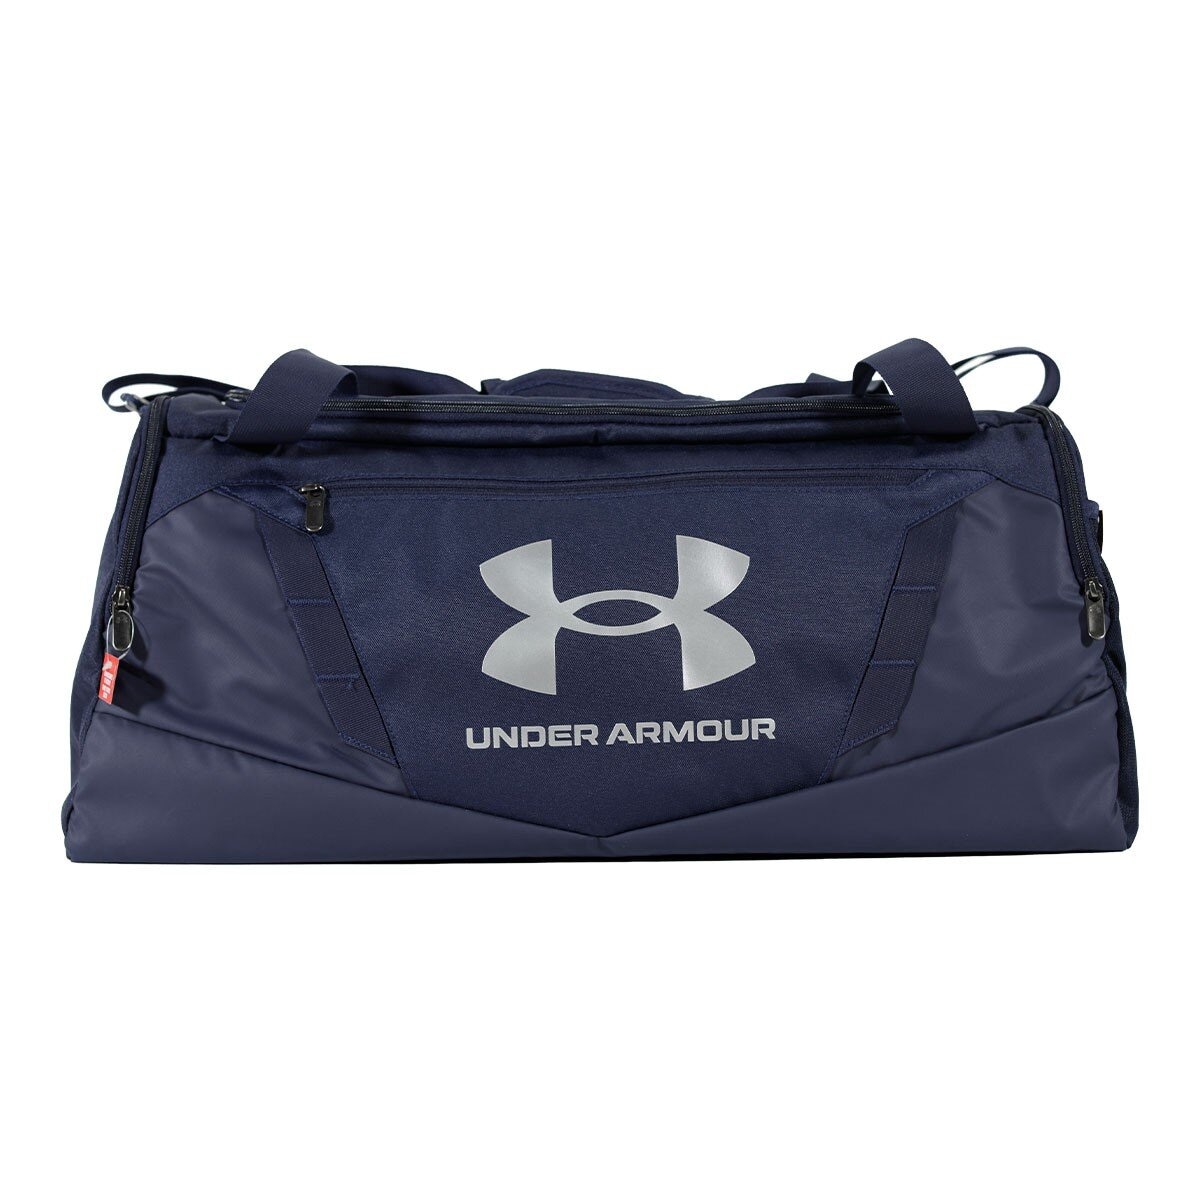 Under Armour Undeniable 5.0 運動健身旅行袋 M 海軍藍